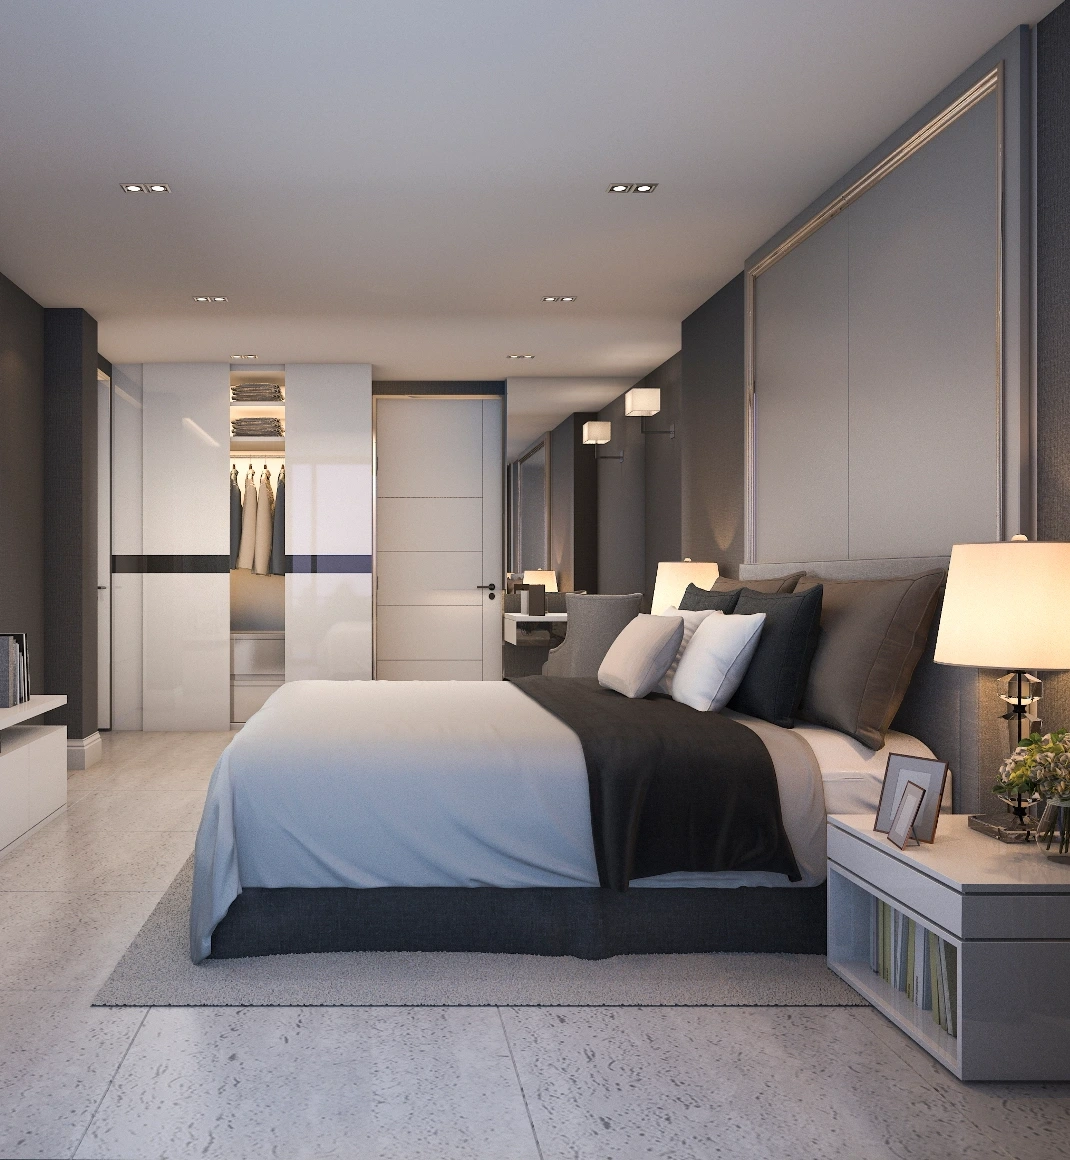 Ett minimalistiskt hotellsovrum med enkla linjer och dämpade färger i beige och svart. En säng med högkvalitativa sängkläder och mjuka kuddar är placerad i ena sidan av rummet. Hotellinredning Göteborg.